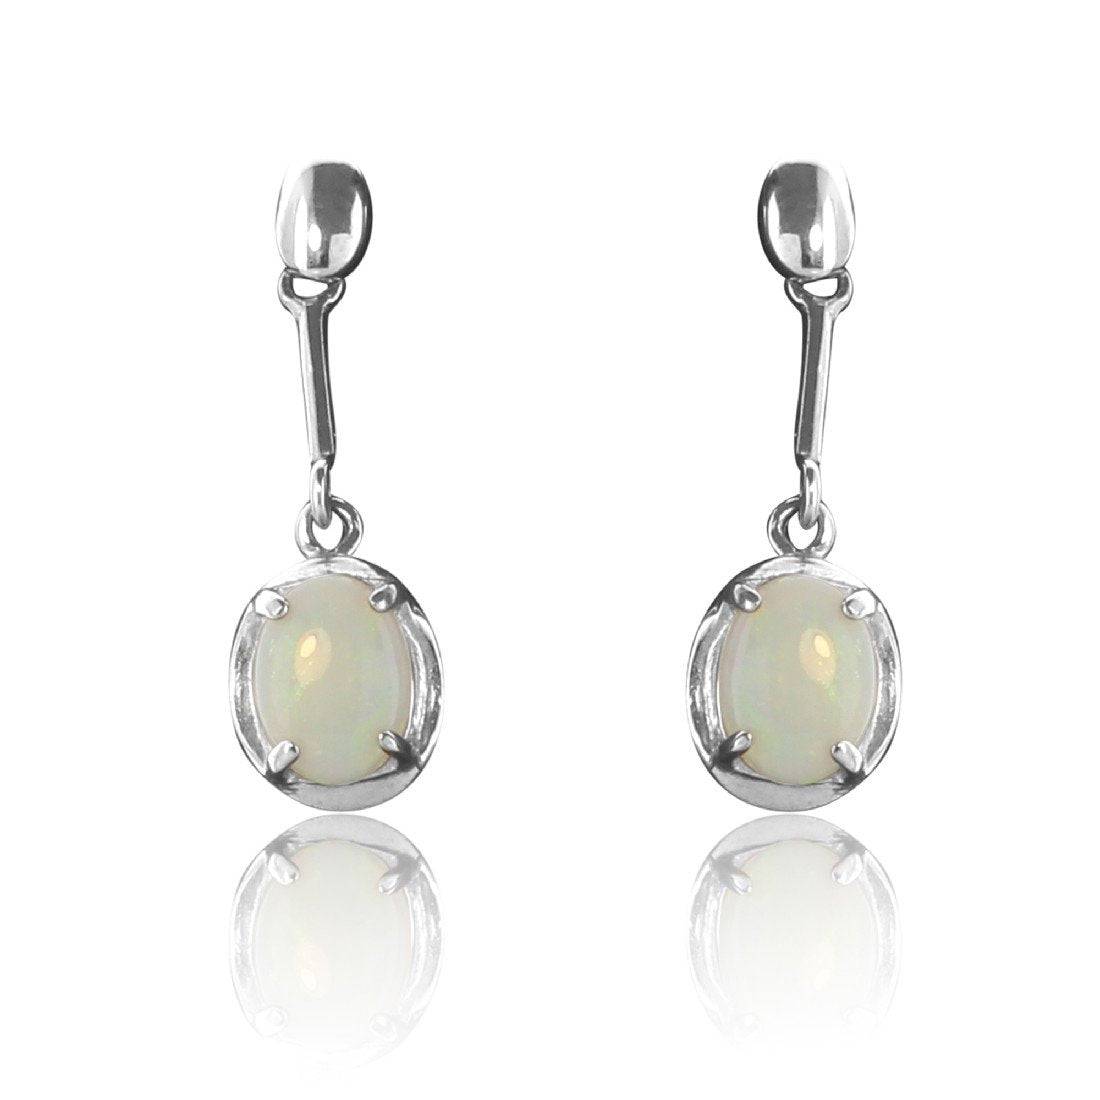 Sterling Silver White Opal earrings - Masterpiece Jewellery Opal & Gems Sydney Australia | Online Shop